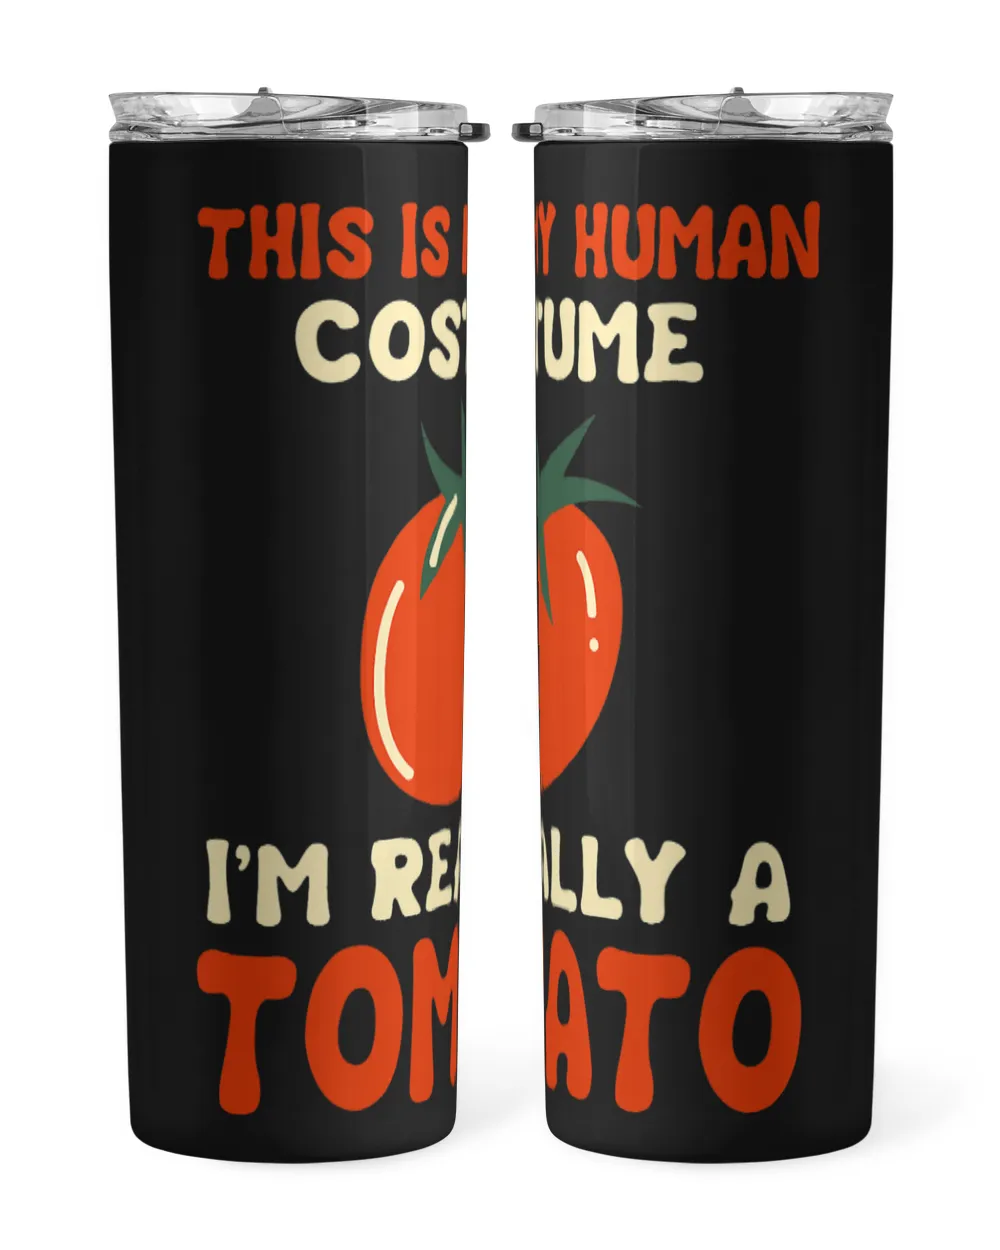 Funny Tomato Halloween Costume